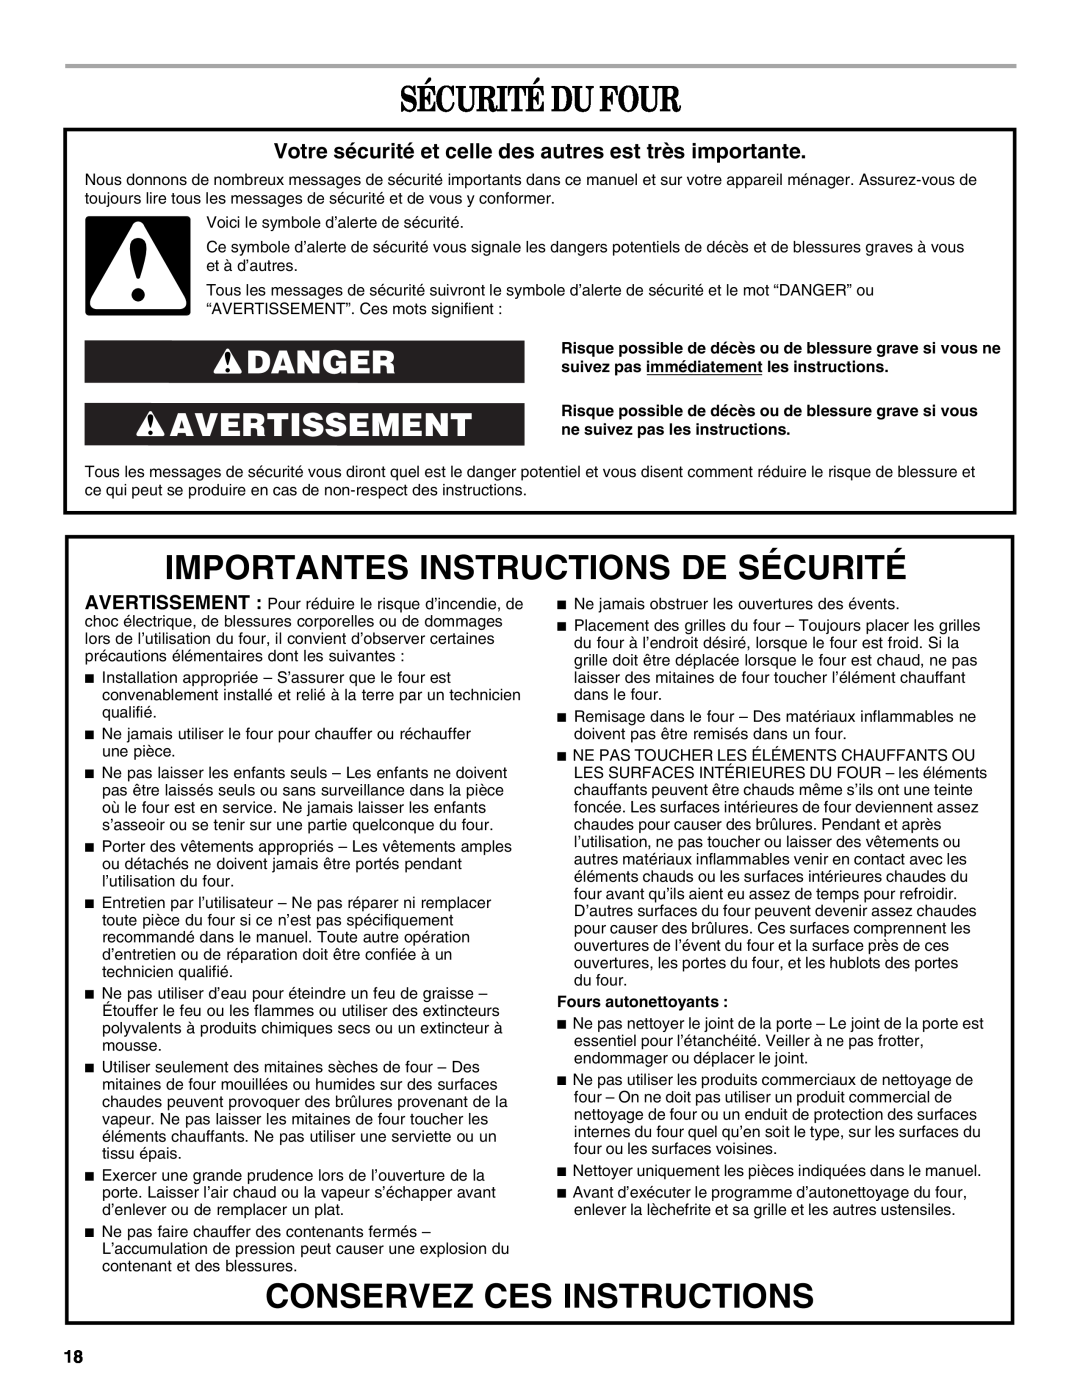 Whirlpool RBD277 Sécurité Du Four, Importantes Instructions De Sécurité, Conservez Ces Instructions, Danger Avertissement 